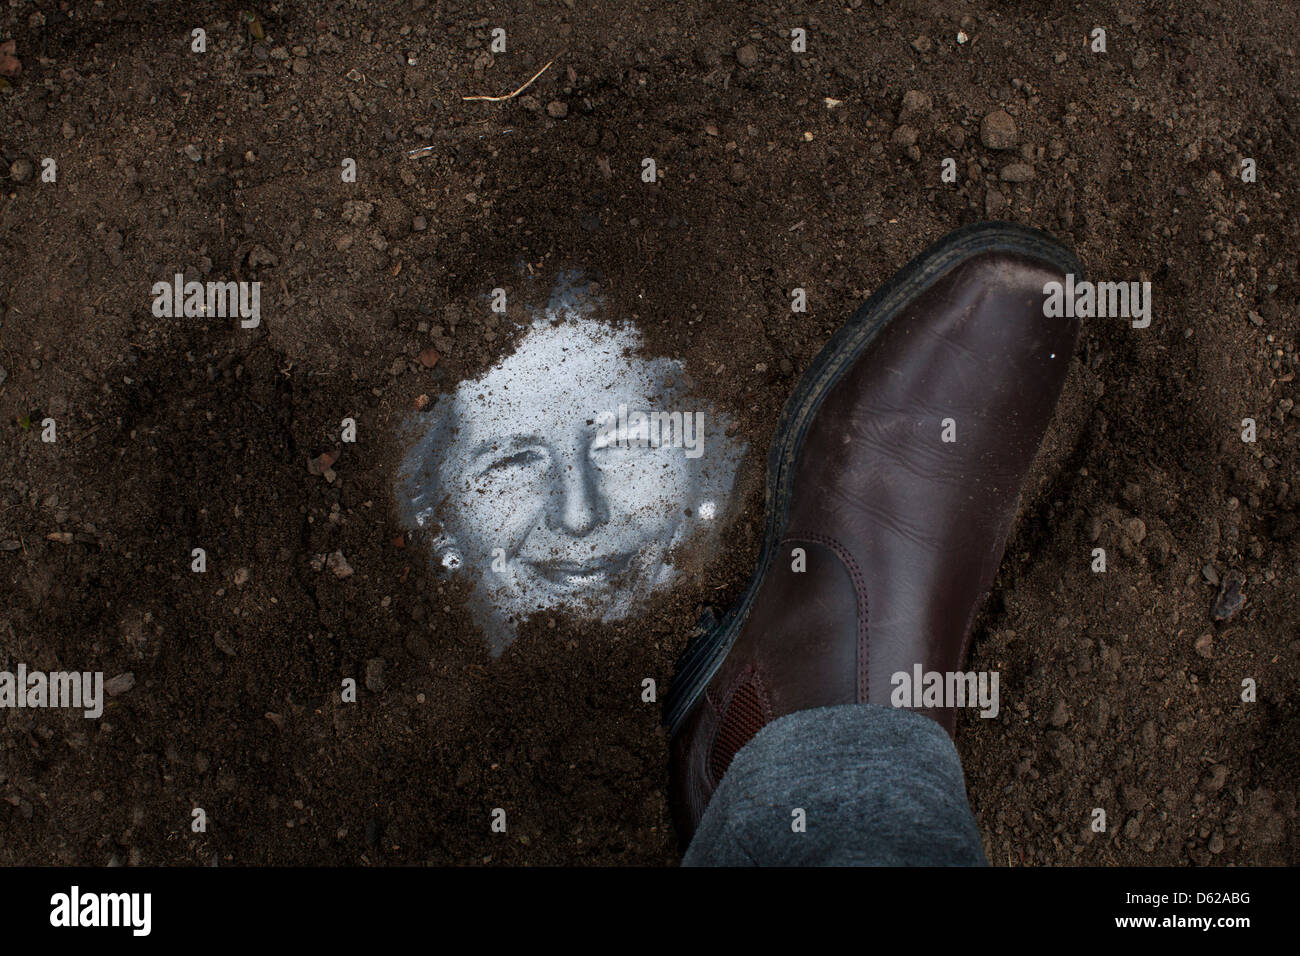 Wandern Sie den Schmutz ab. Ein Bild der ehemaligen britischen Premierministerin Margaret Thatcher ist im Boden vergraben und stampfte auf Stockfoto